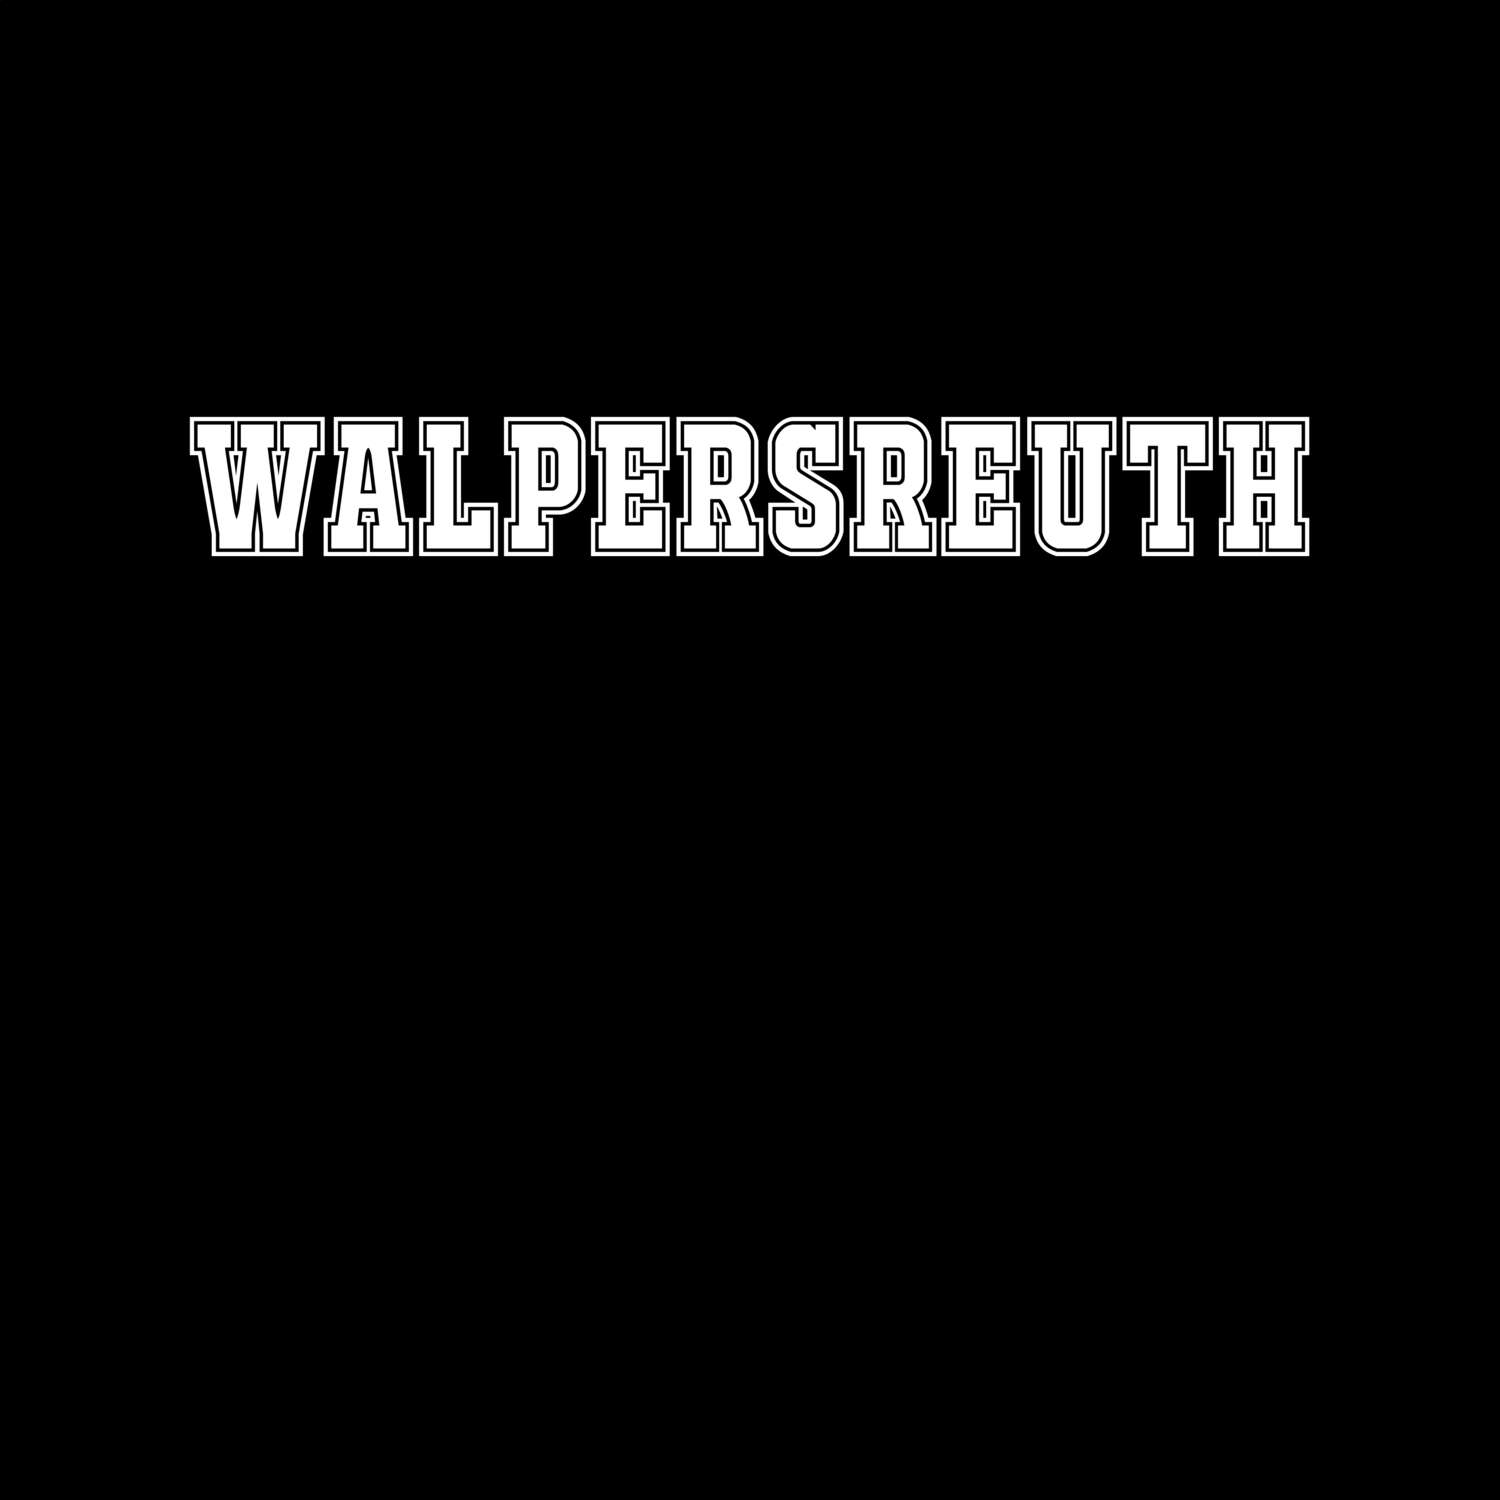 Walpersreuth T-Shirt »Classic«